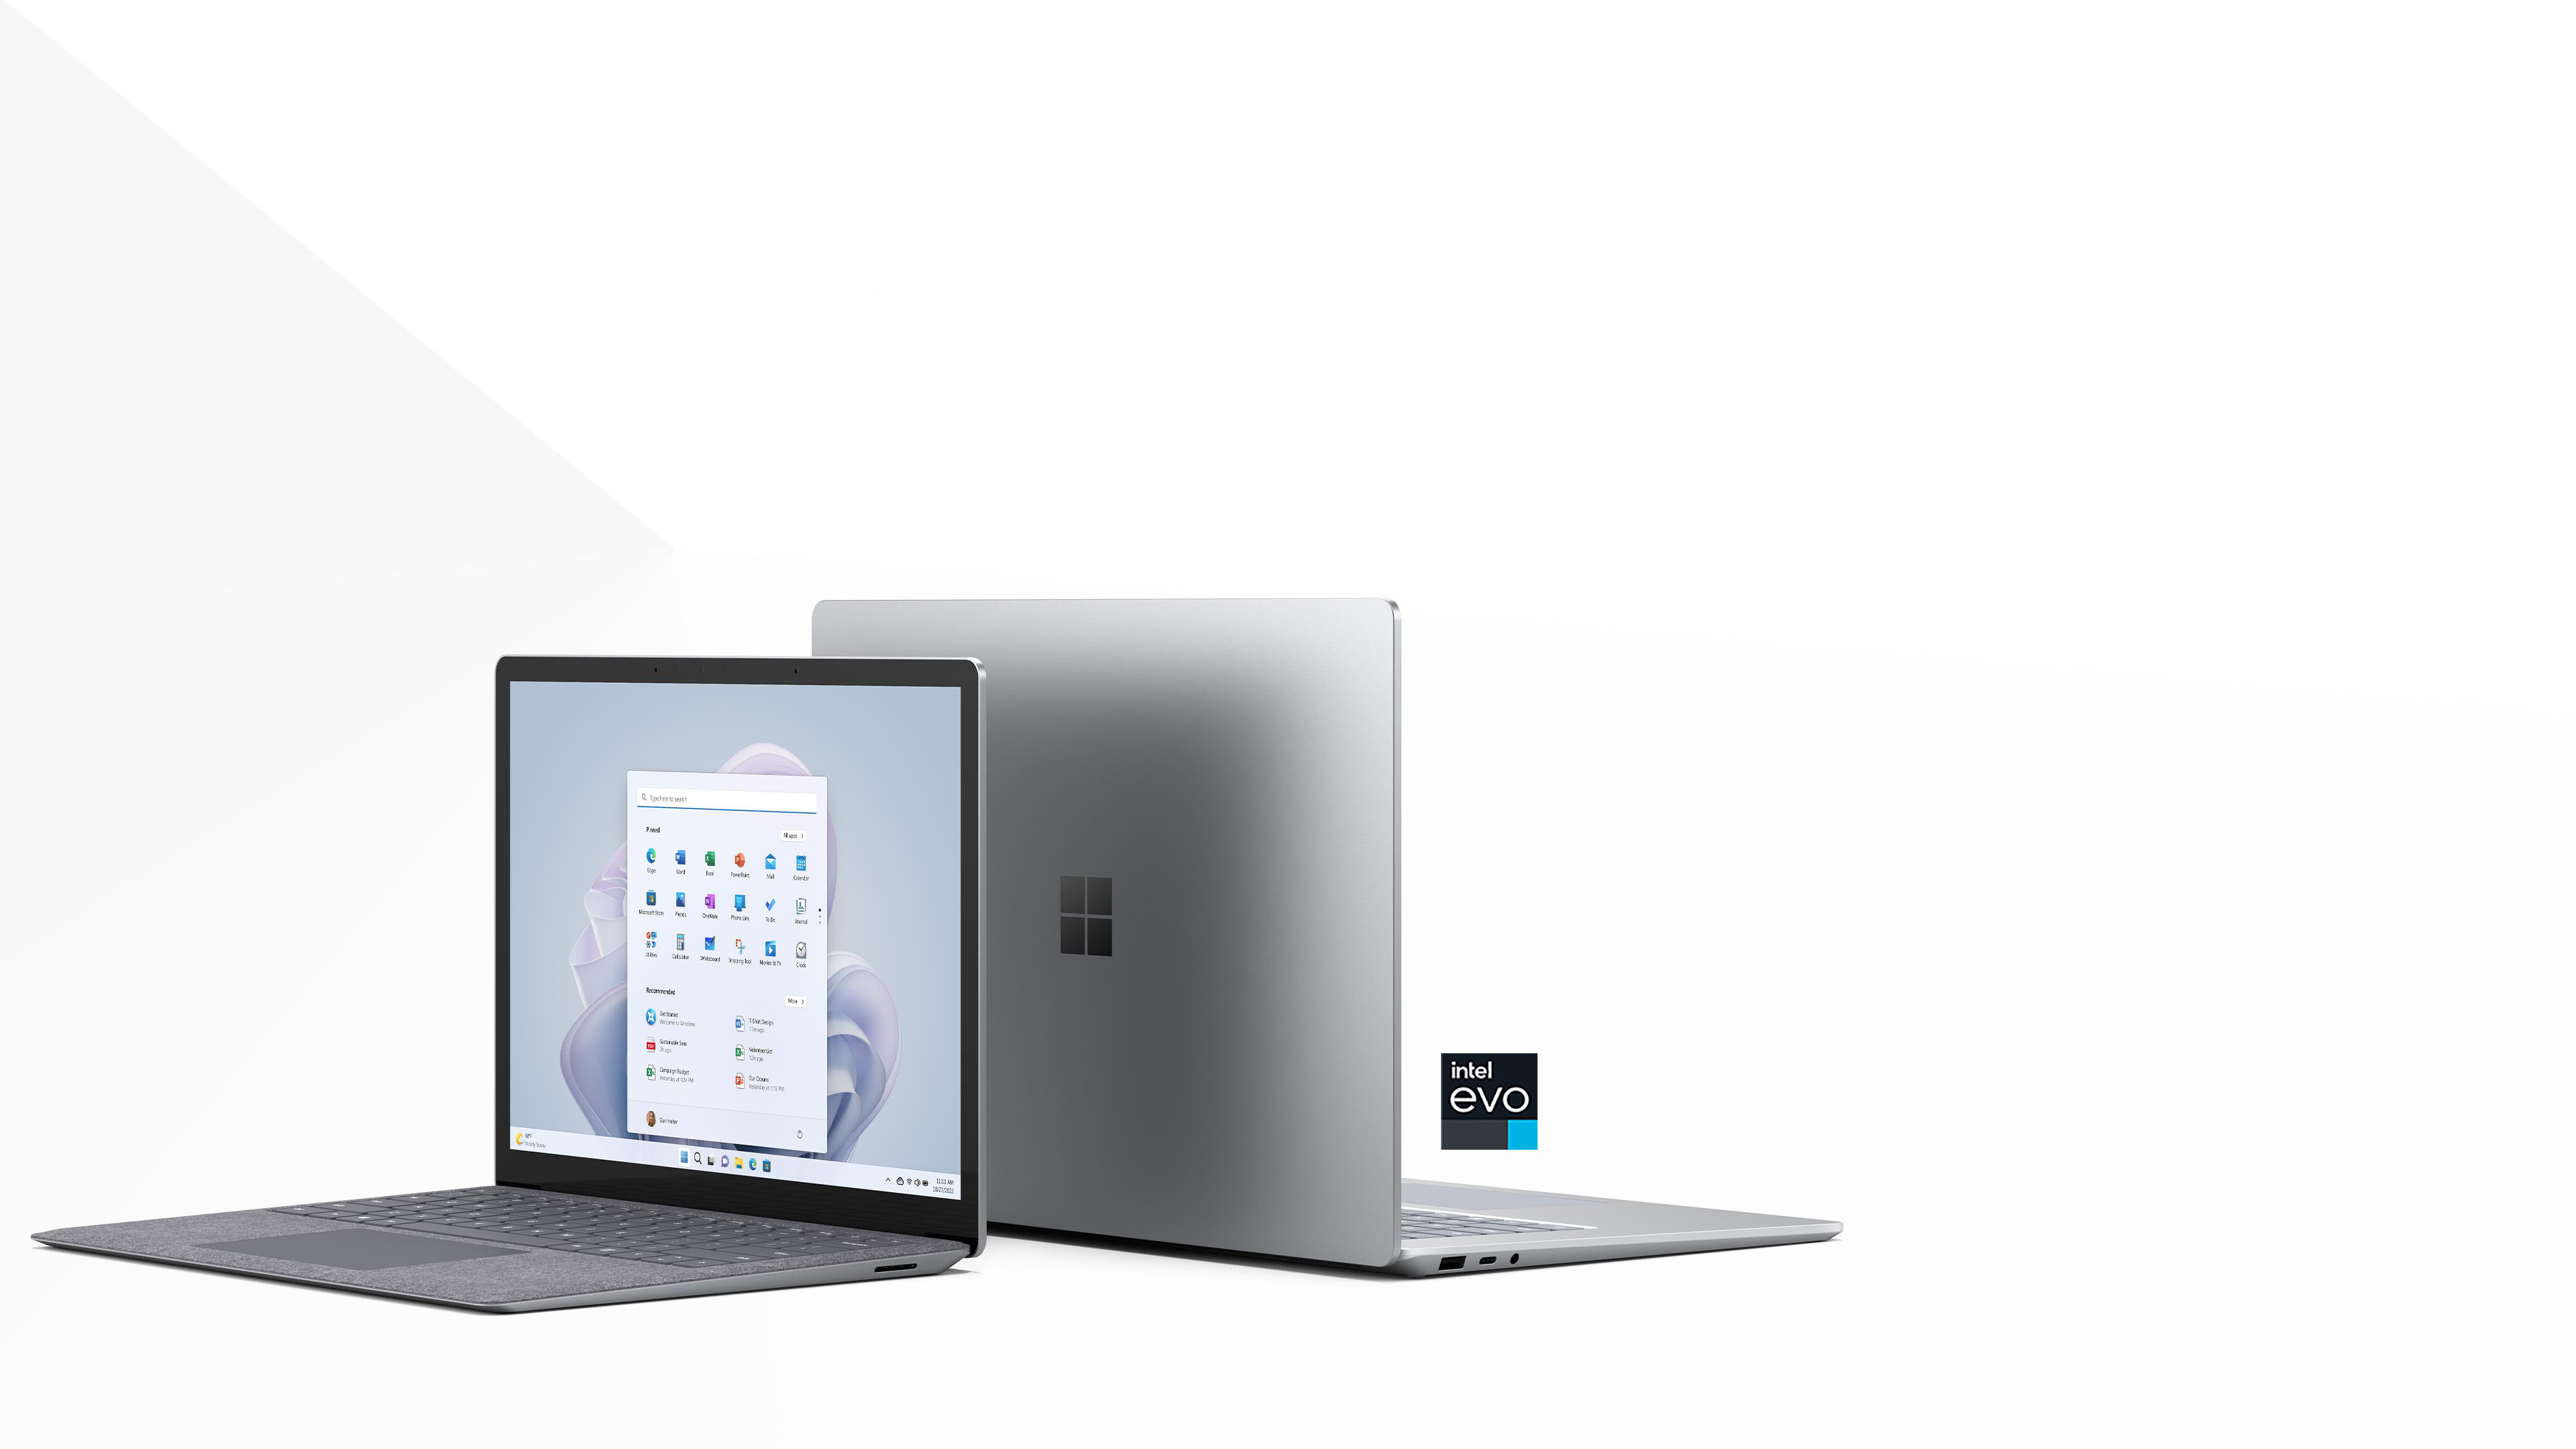 Dwa rozmiary Surface Laptop 5 są pokazane tyłem do siebie z 13,5-calowym modelem z przodu, otwartym w pełni i pokazującym ekran startowy w kolorze platynowym. Model 15-calowy jest skierowany do tyłu obrazu z częściowo otwartą górą. Posiada certyfikat Intel Evo.